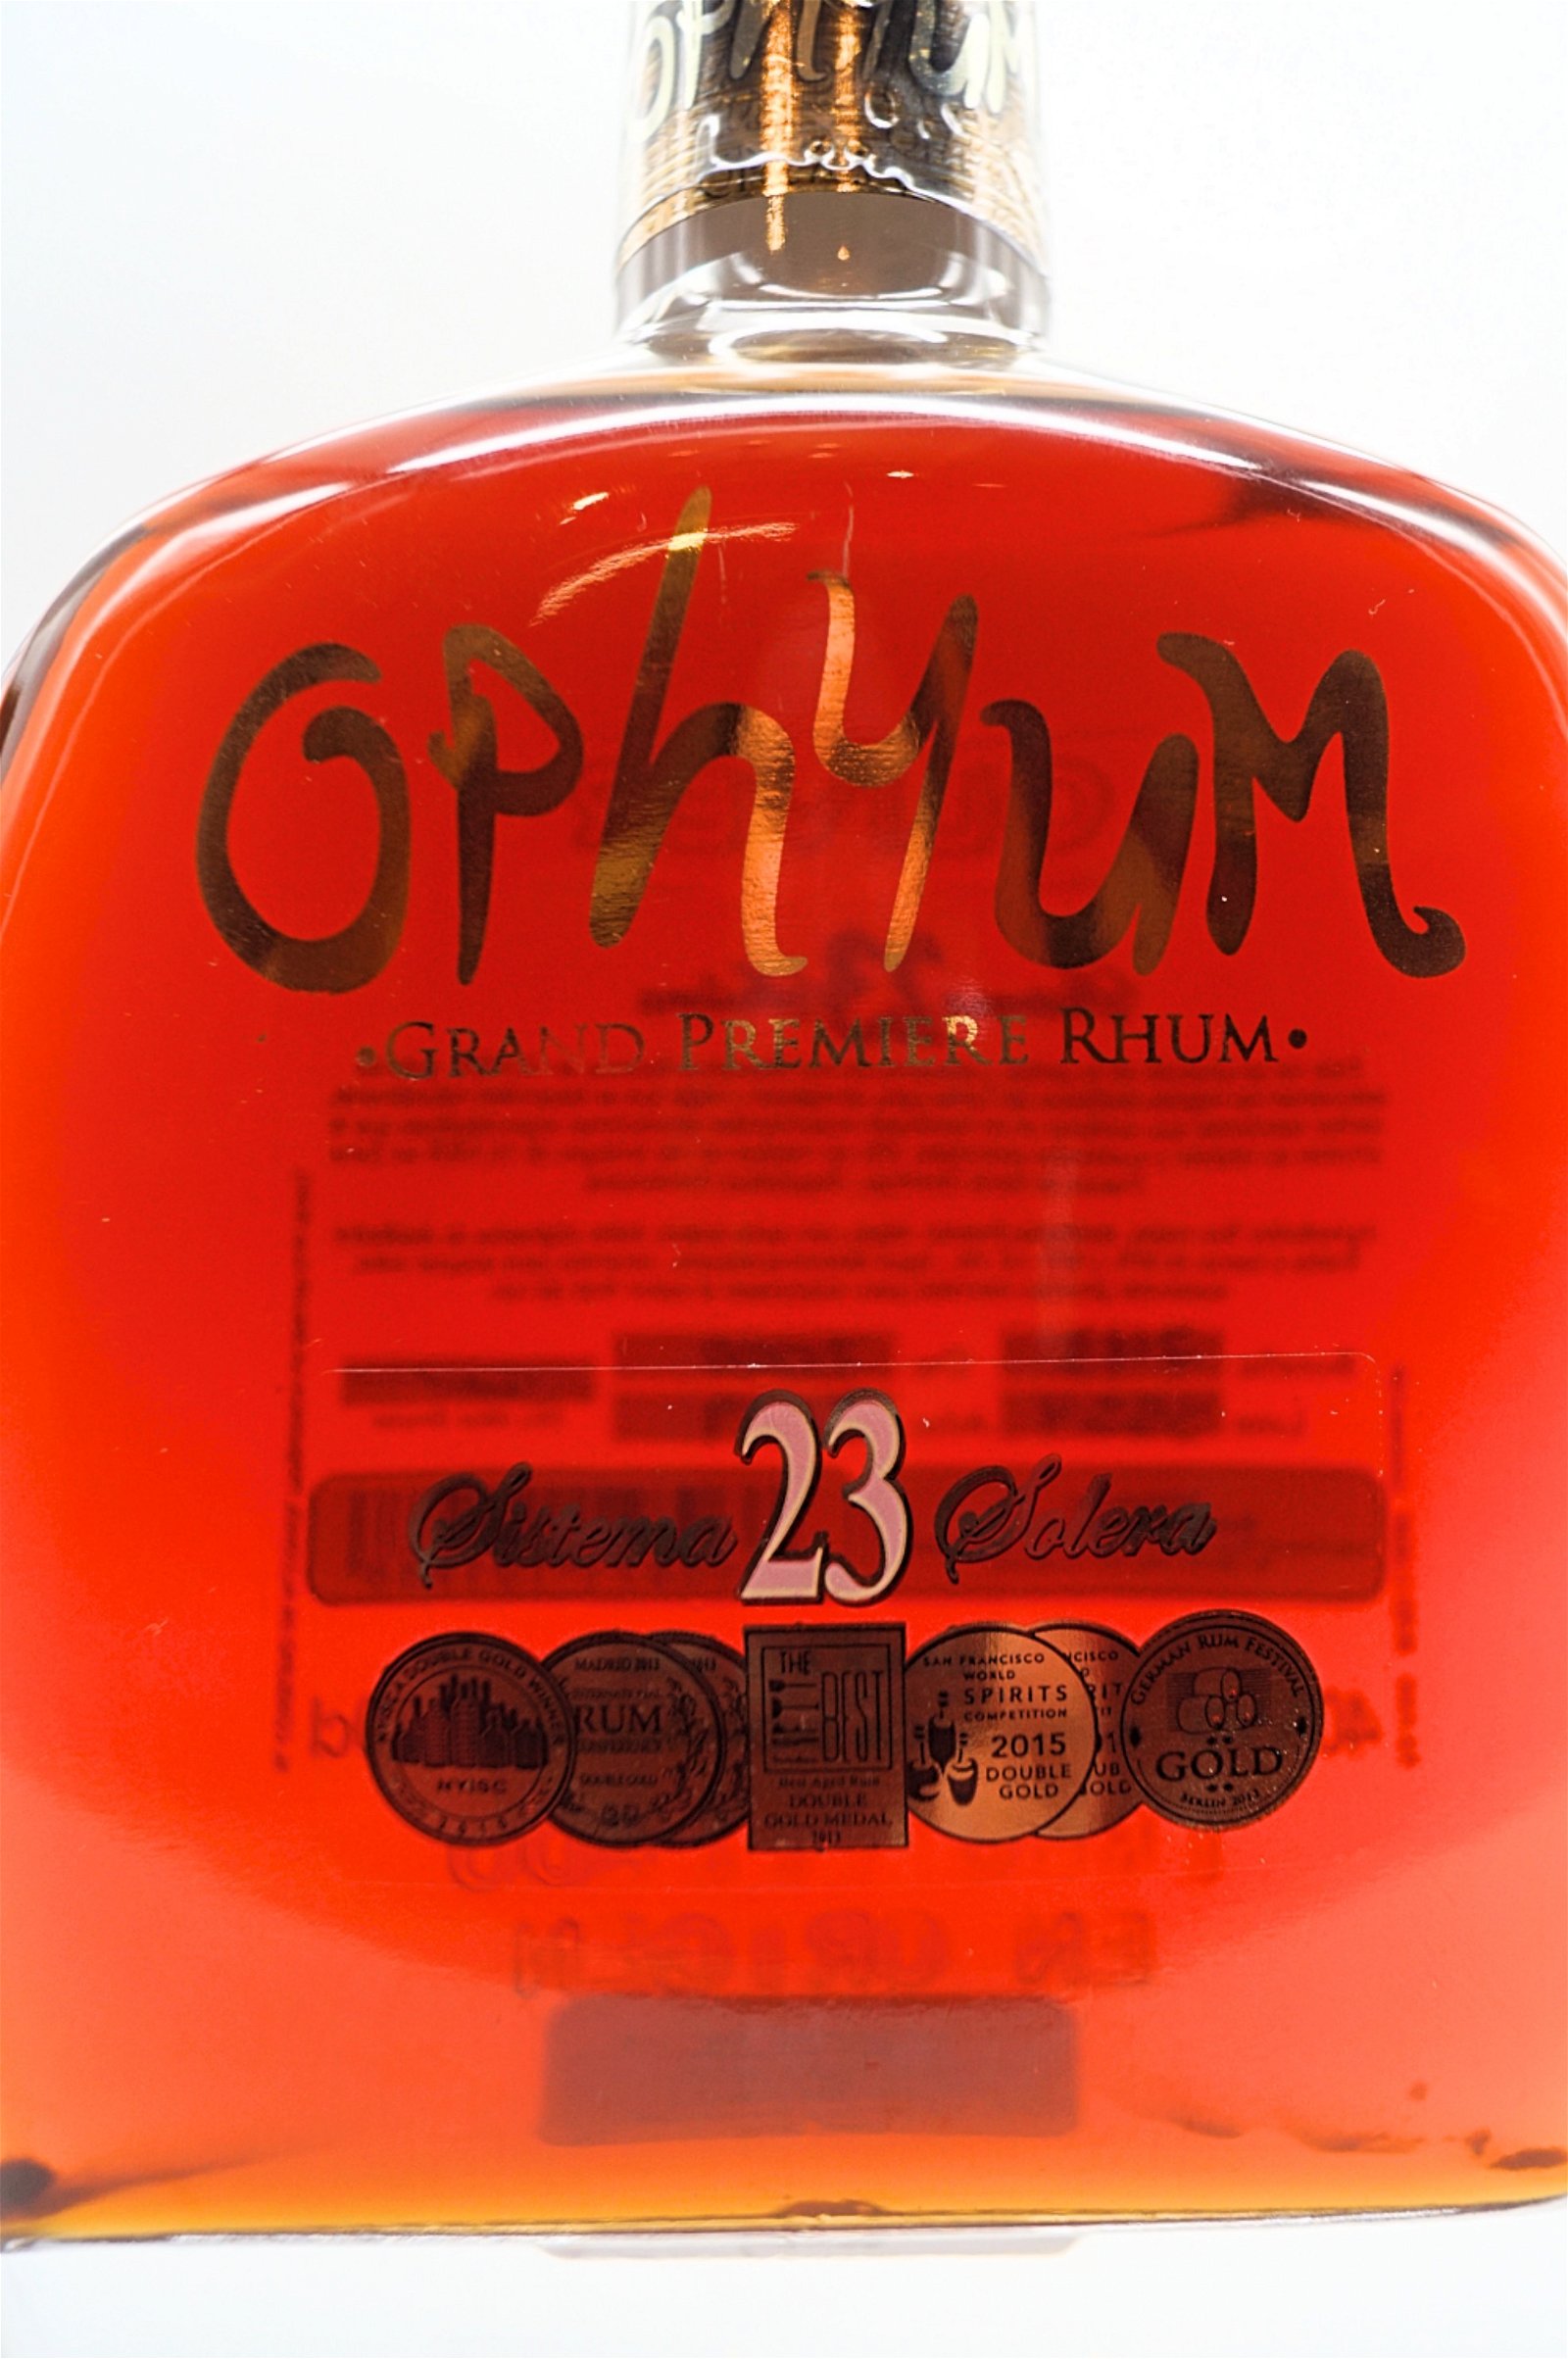 Ophyum 23 Jahre Solera Grand Premiere Rhum